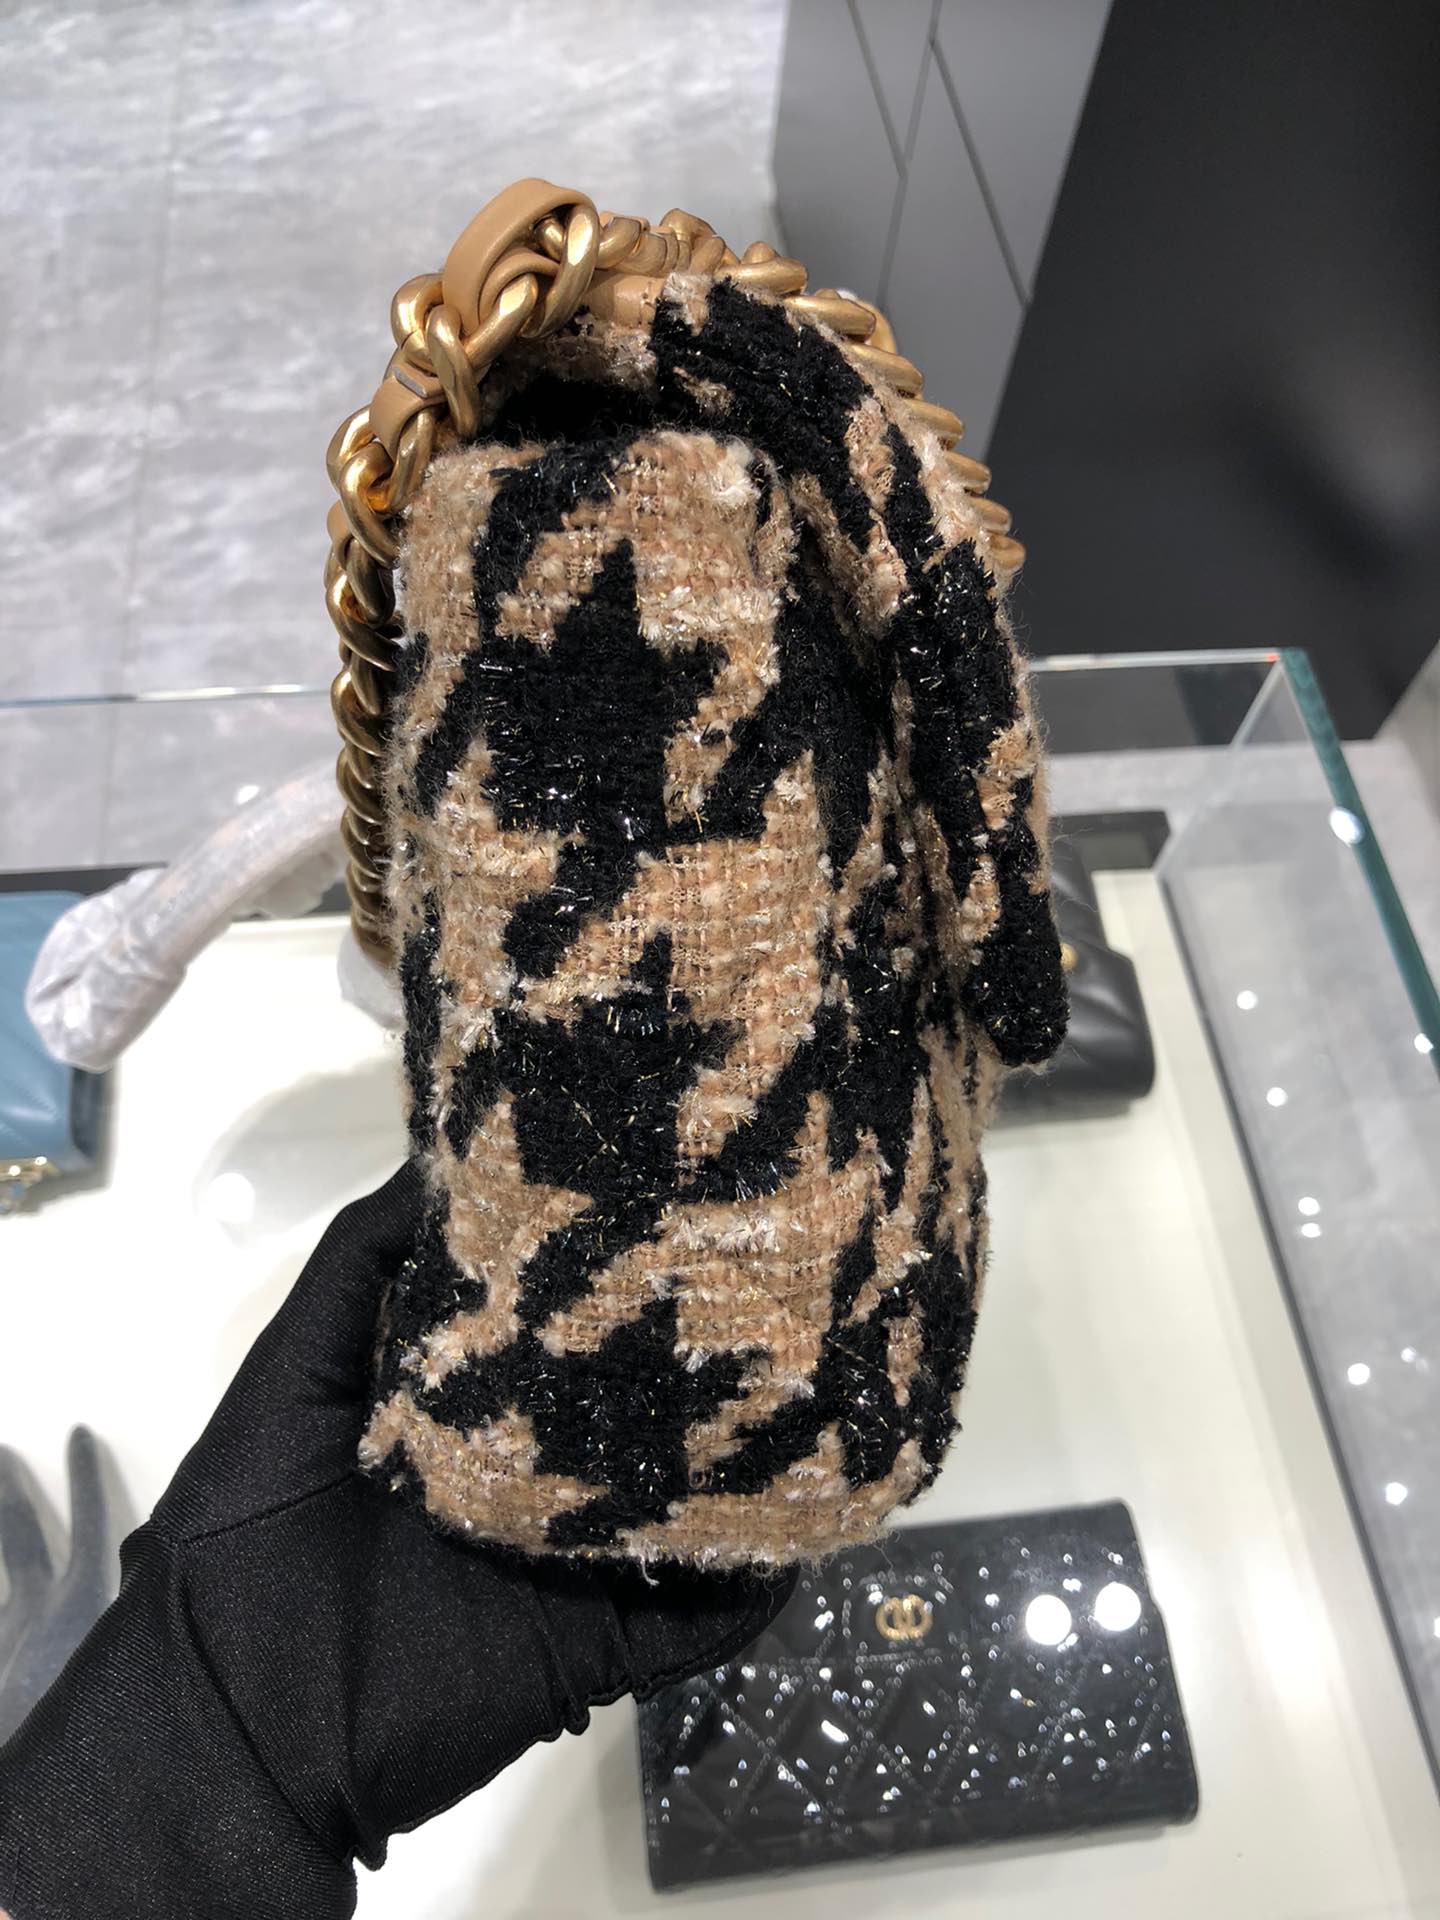 【正品级】 Chanel 2019 秋冬千鸟格系列  20:30:10 全套包装